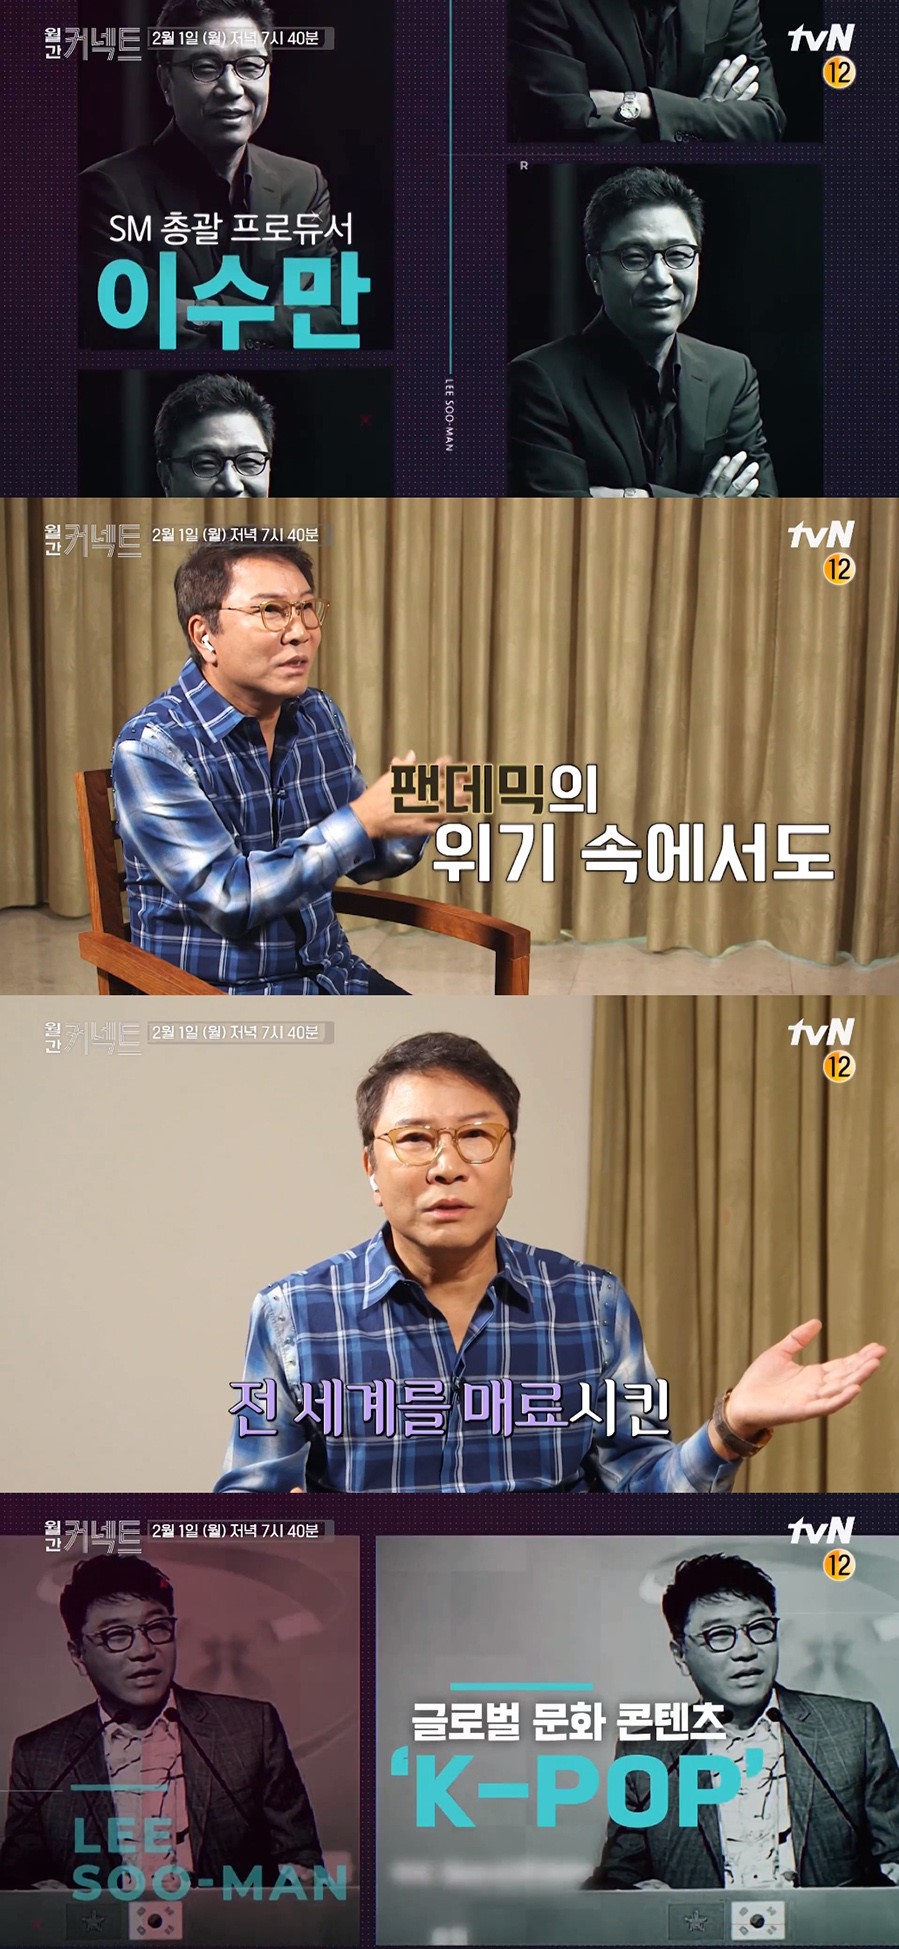 李秀满总制作人出演tvN《Monthly Connect》预告篇截图.jpg